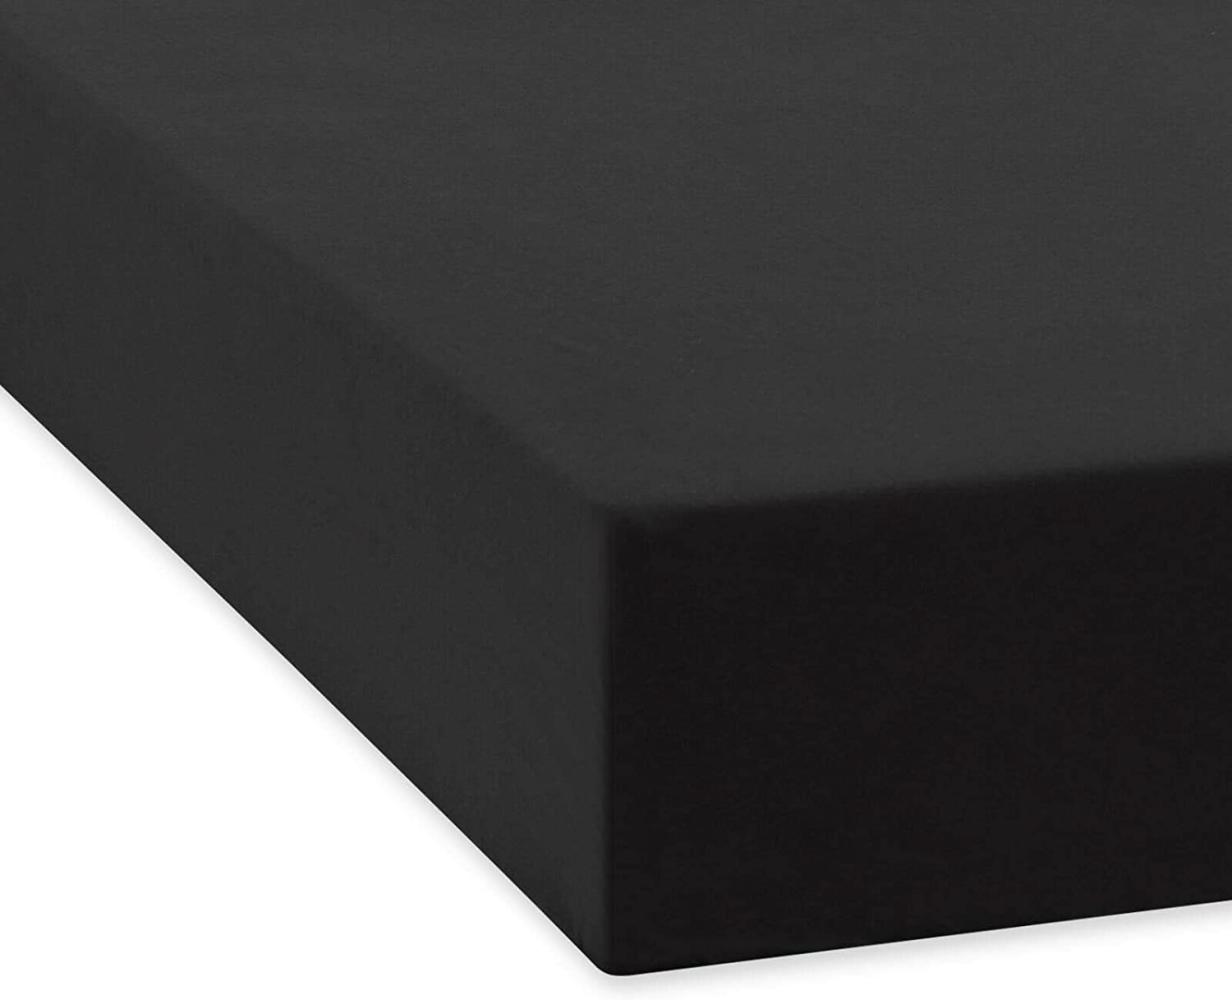 Traumschlaf 'Feinbiber' Spannbettlaken, Baumwolle schwarz, 100 x 220 x 25 cm Bild 1